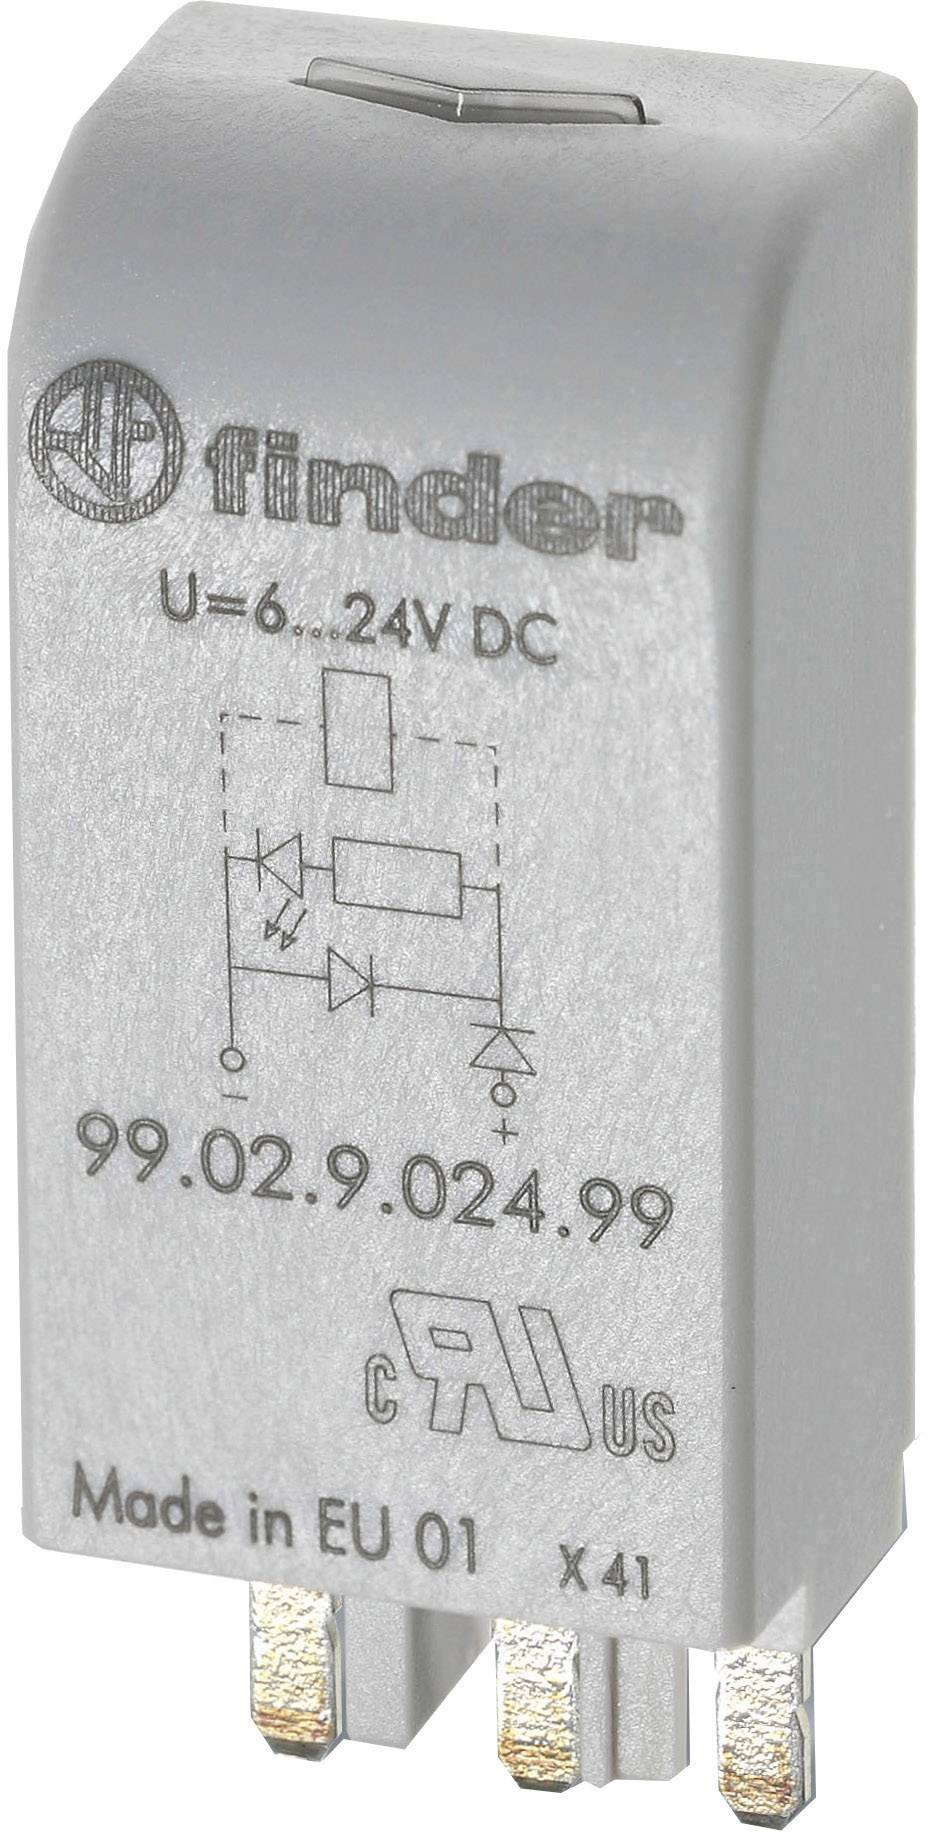 FINDER Steckmodul mit Freilaufdiode 1 St. Finder 99.02.3.000.00 Passend für Serie: Finder Serie 90,